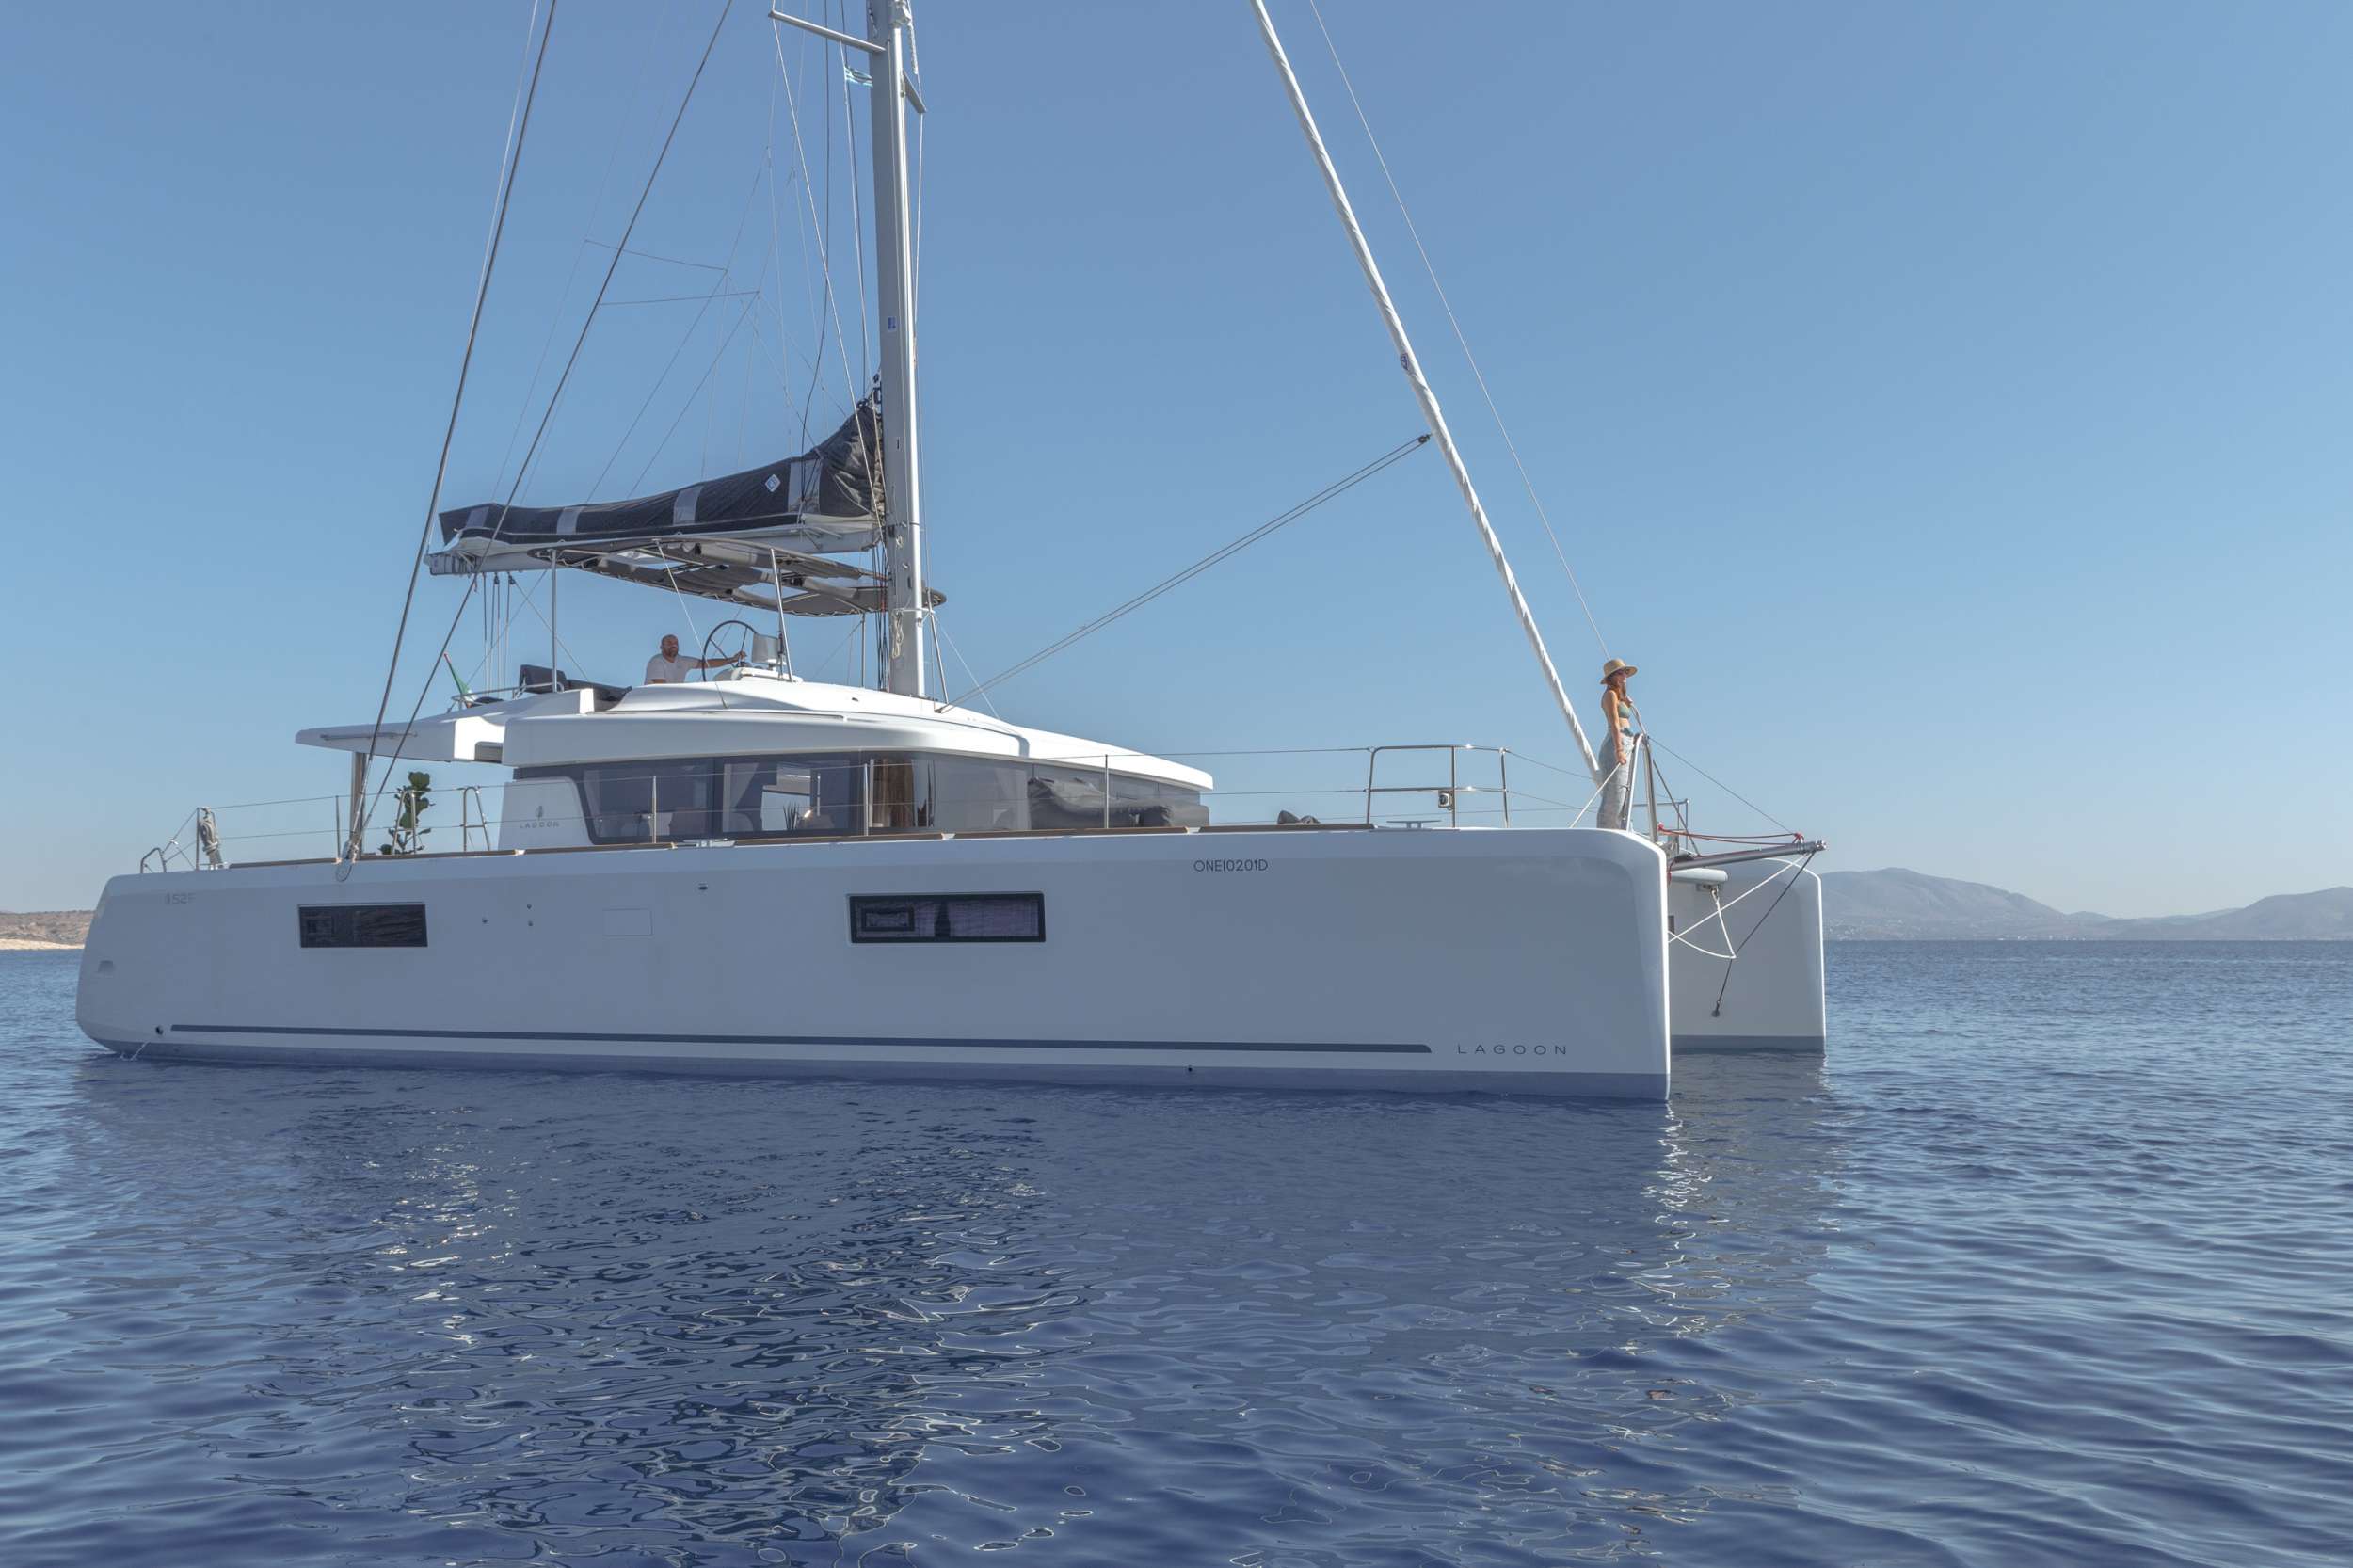 ONEIDA - Yacht Charter Skopelos & Boat hire in Greece 1